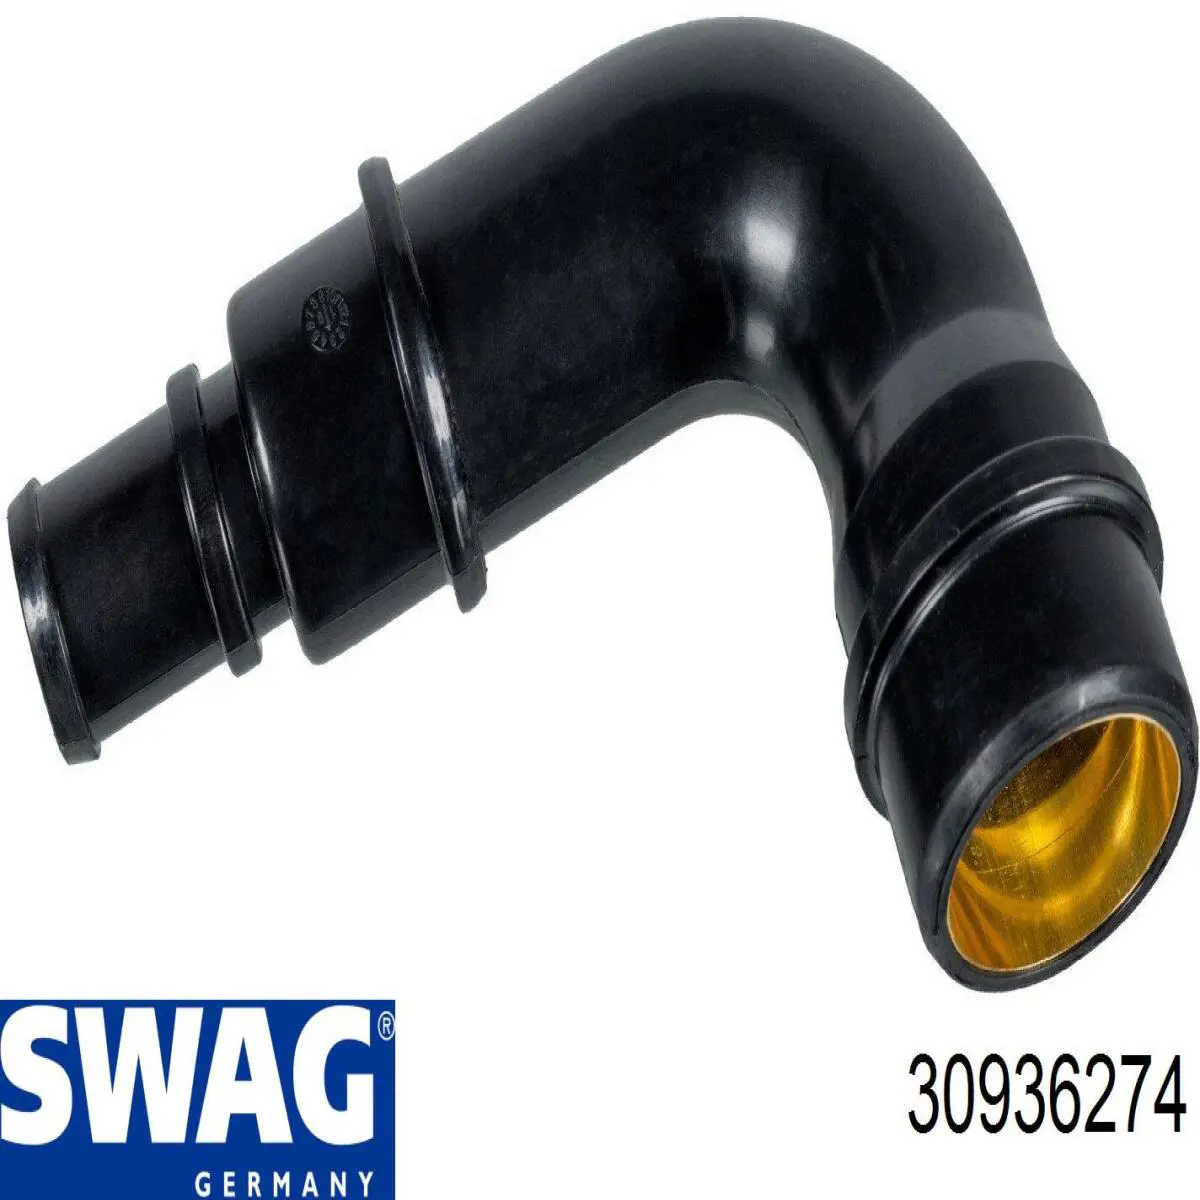 30936274 Swag tubo de ventilacion del carter (separador de aceite)